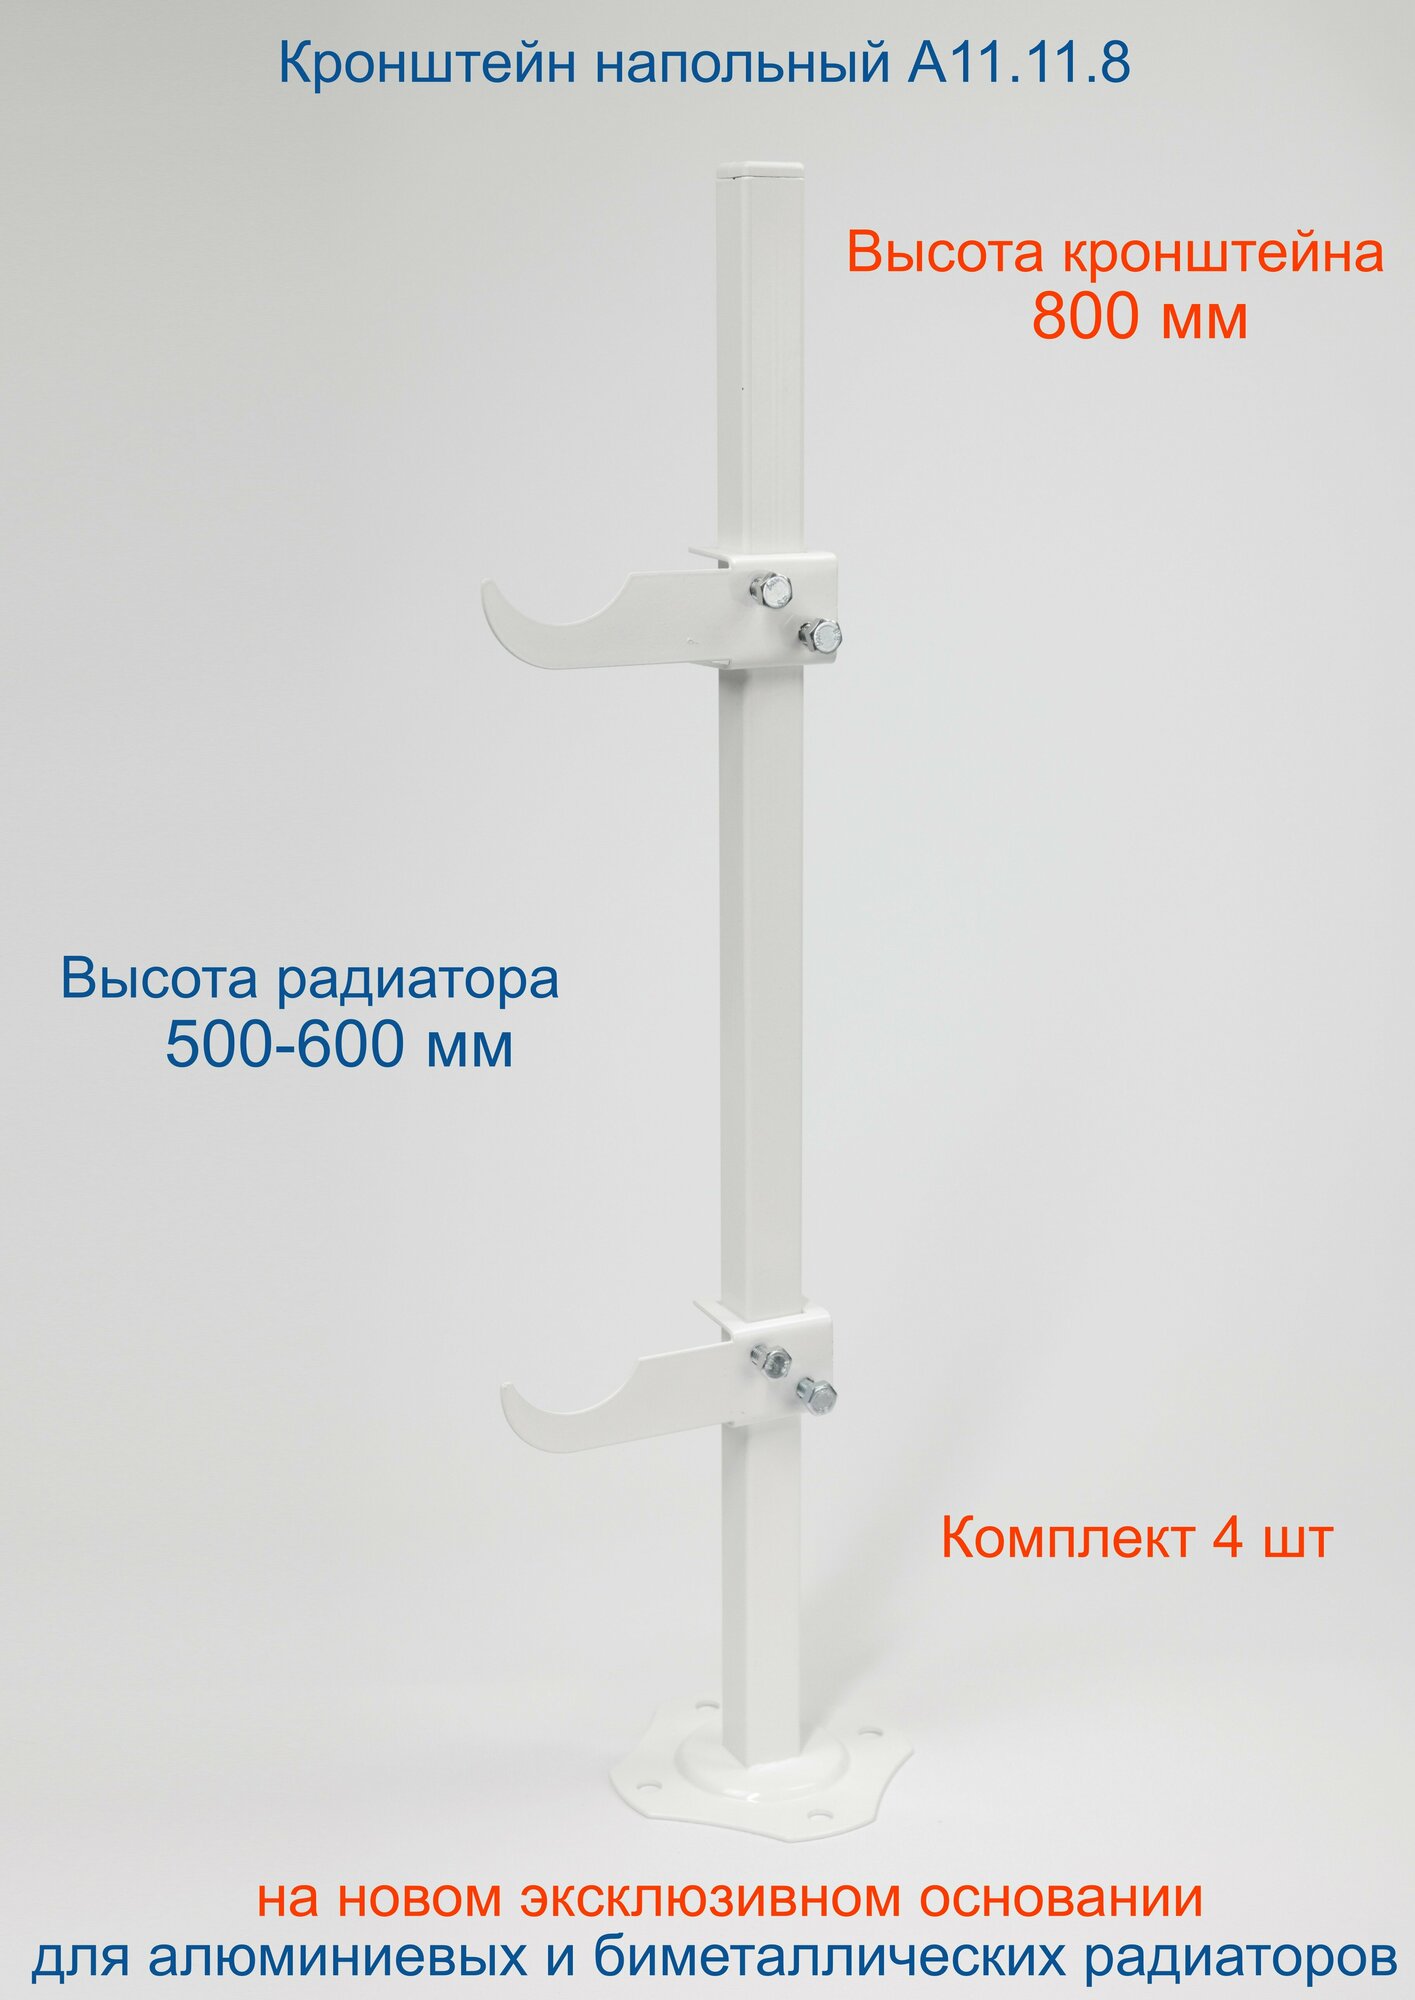 Кронштейн напольный регулируемый Кайрос А11.11.8 для алюминиевых и биметаллических радиаторов высотой 500-600 мм (высота стойки 800 мм)